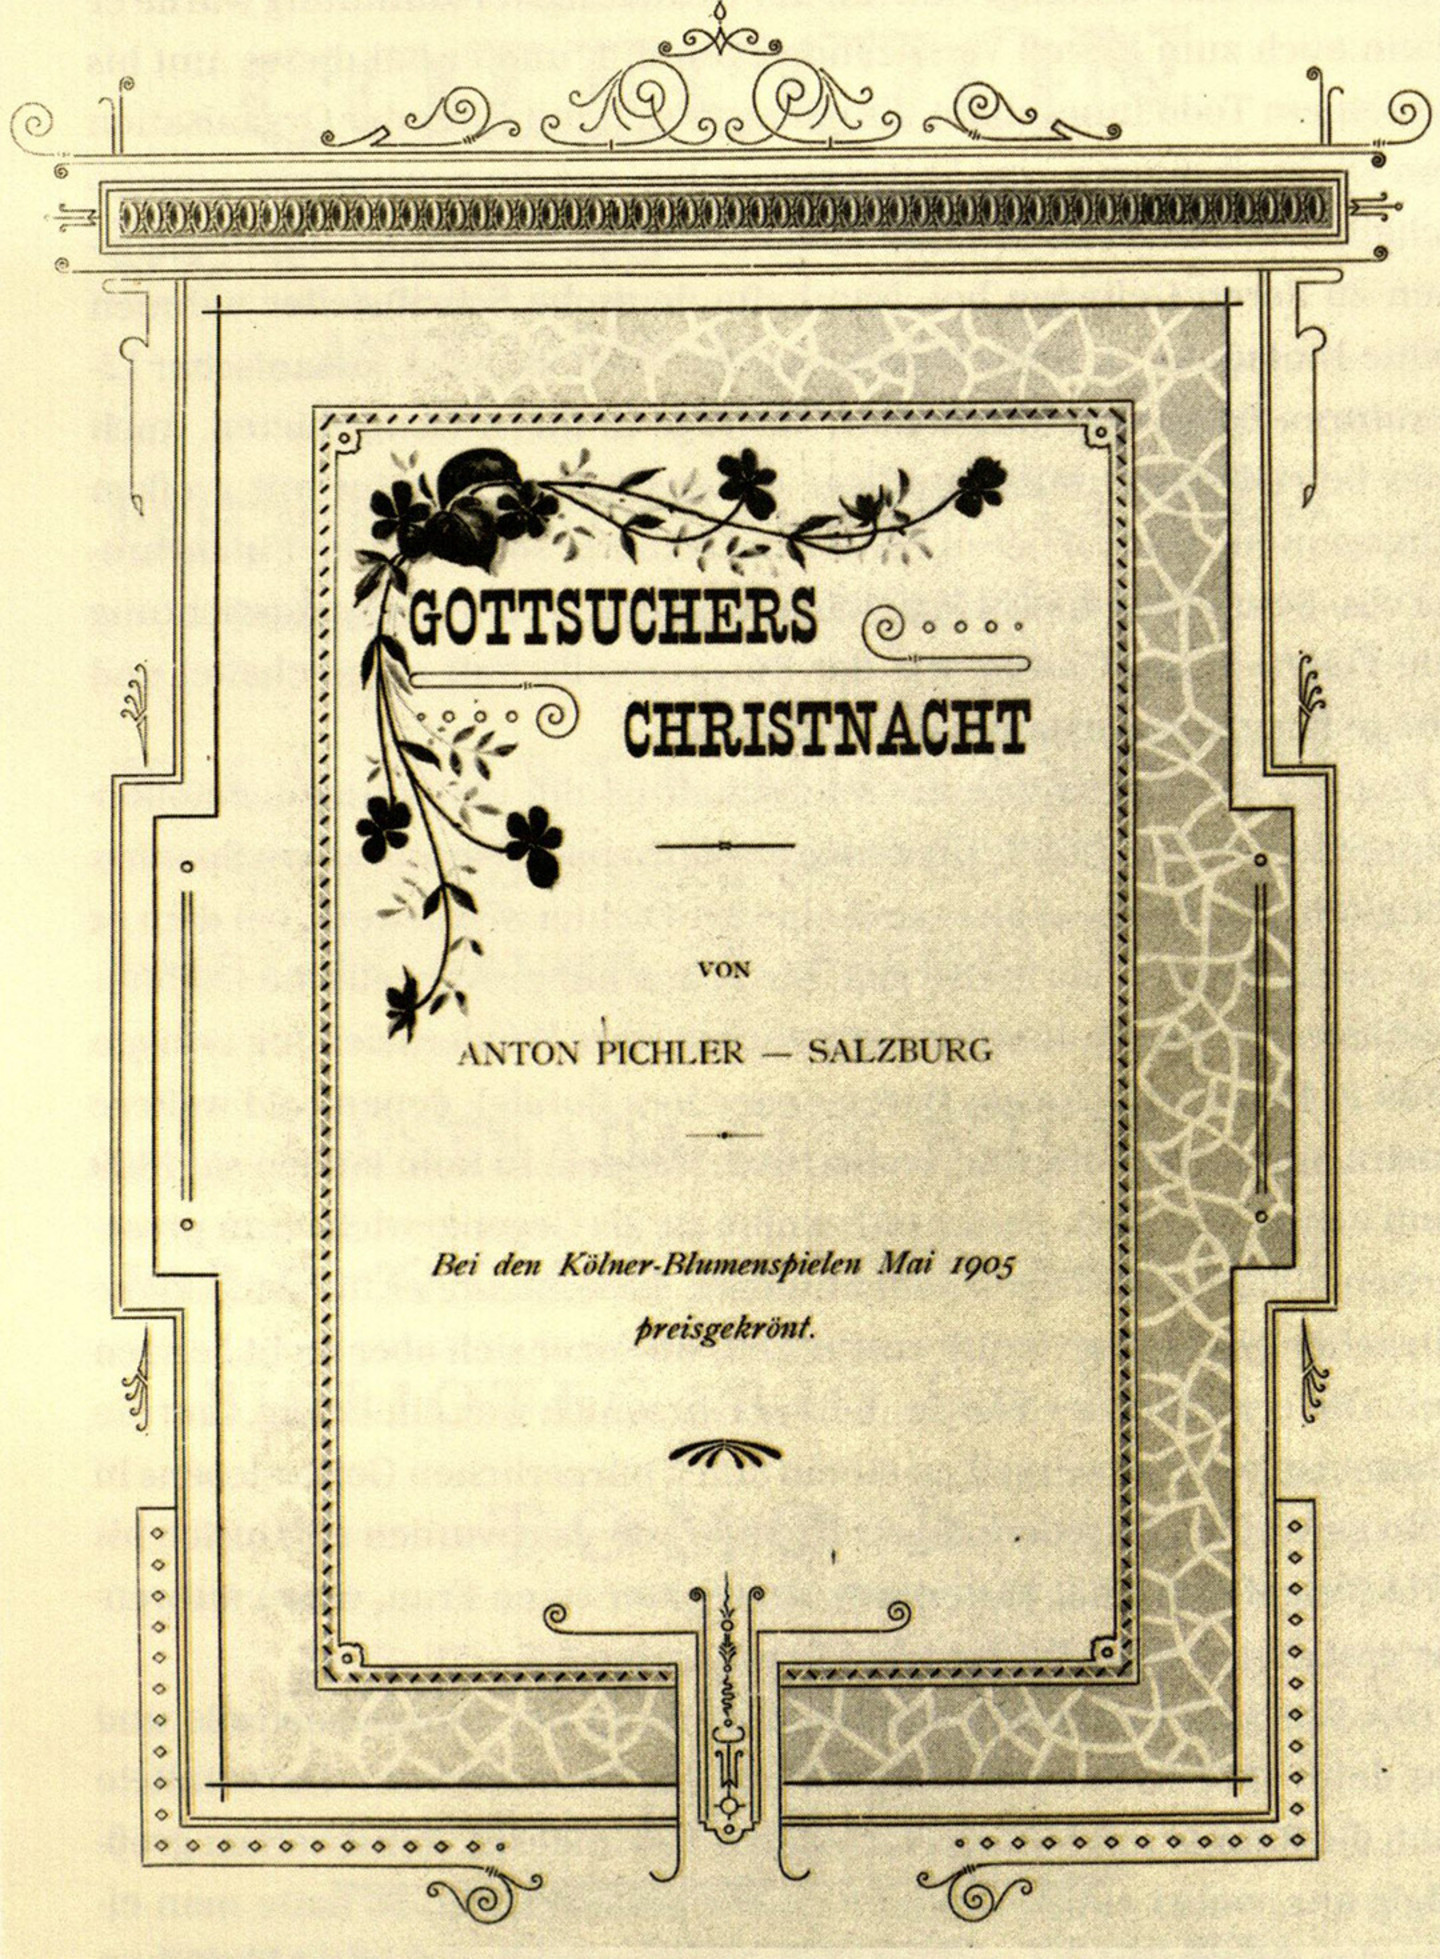 Das Frontblatt des preisgekrönten Gedicht "Gottsuchers Christnacht" von Anton Pilcher bei den Kölner Blumenspielen im Mai 1903; verziert mit Blumenzeichnungen.